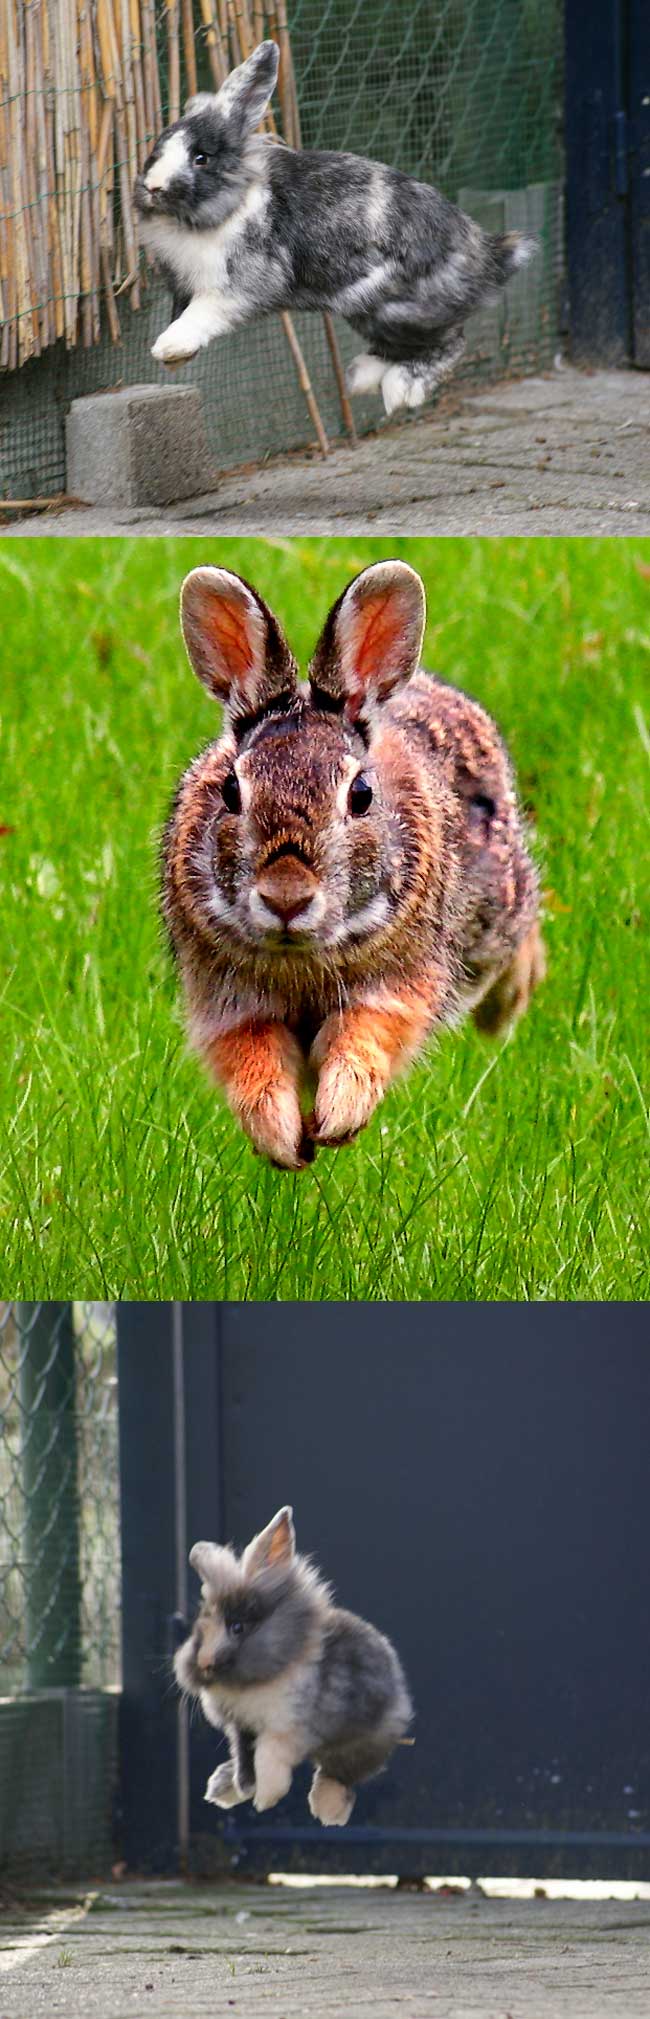 Fakta: Kaniner kan hoppe 3 meter i længden og knap 1 meter i højden